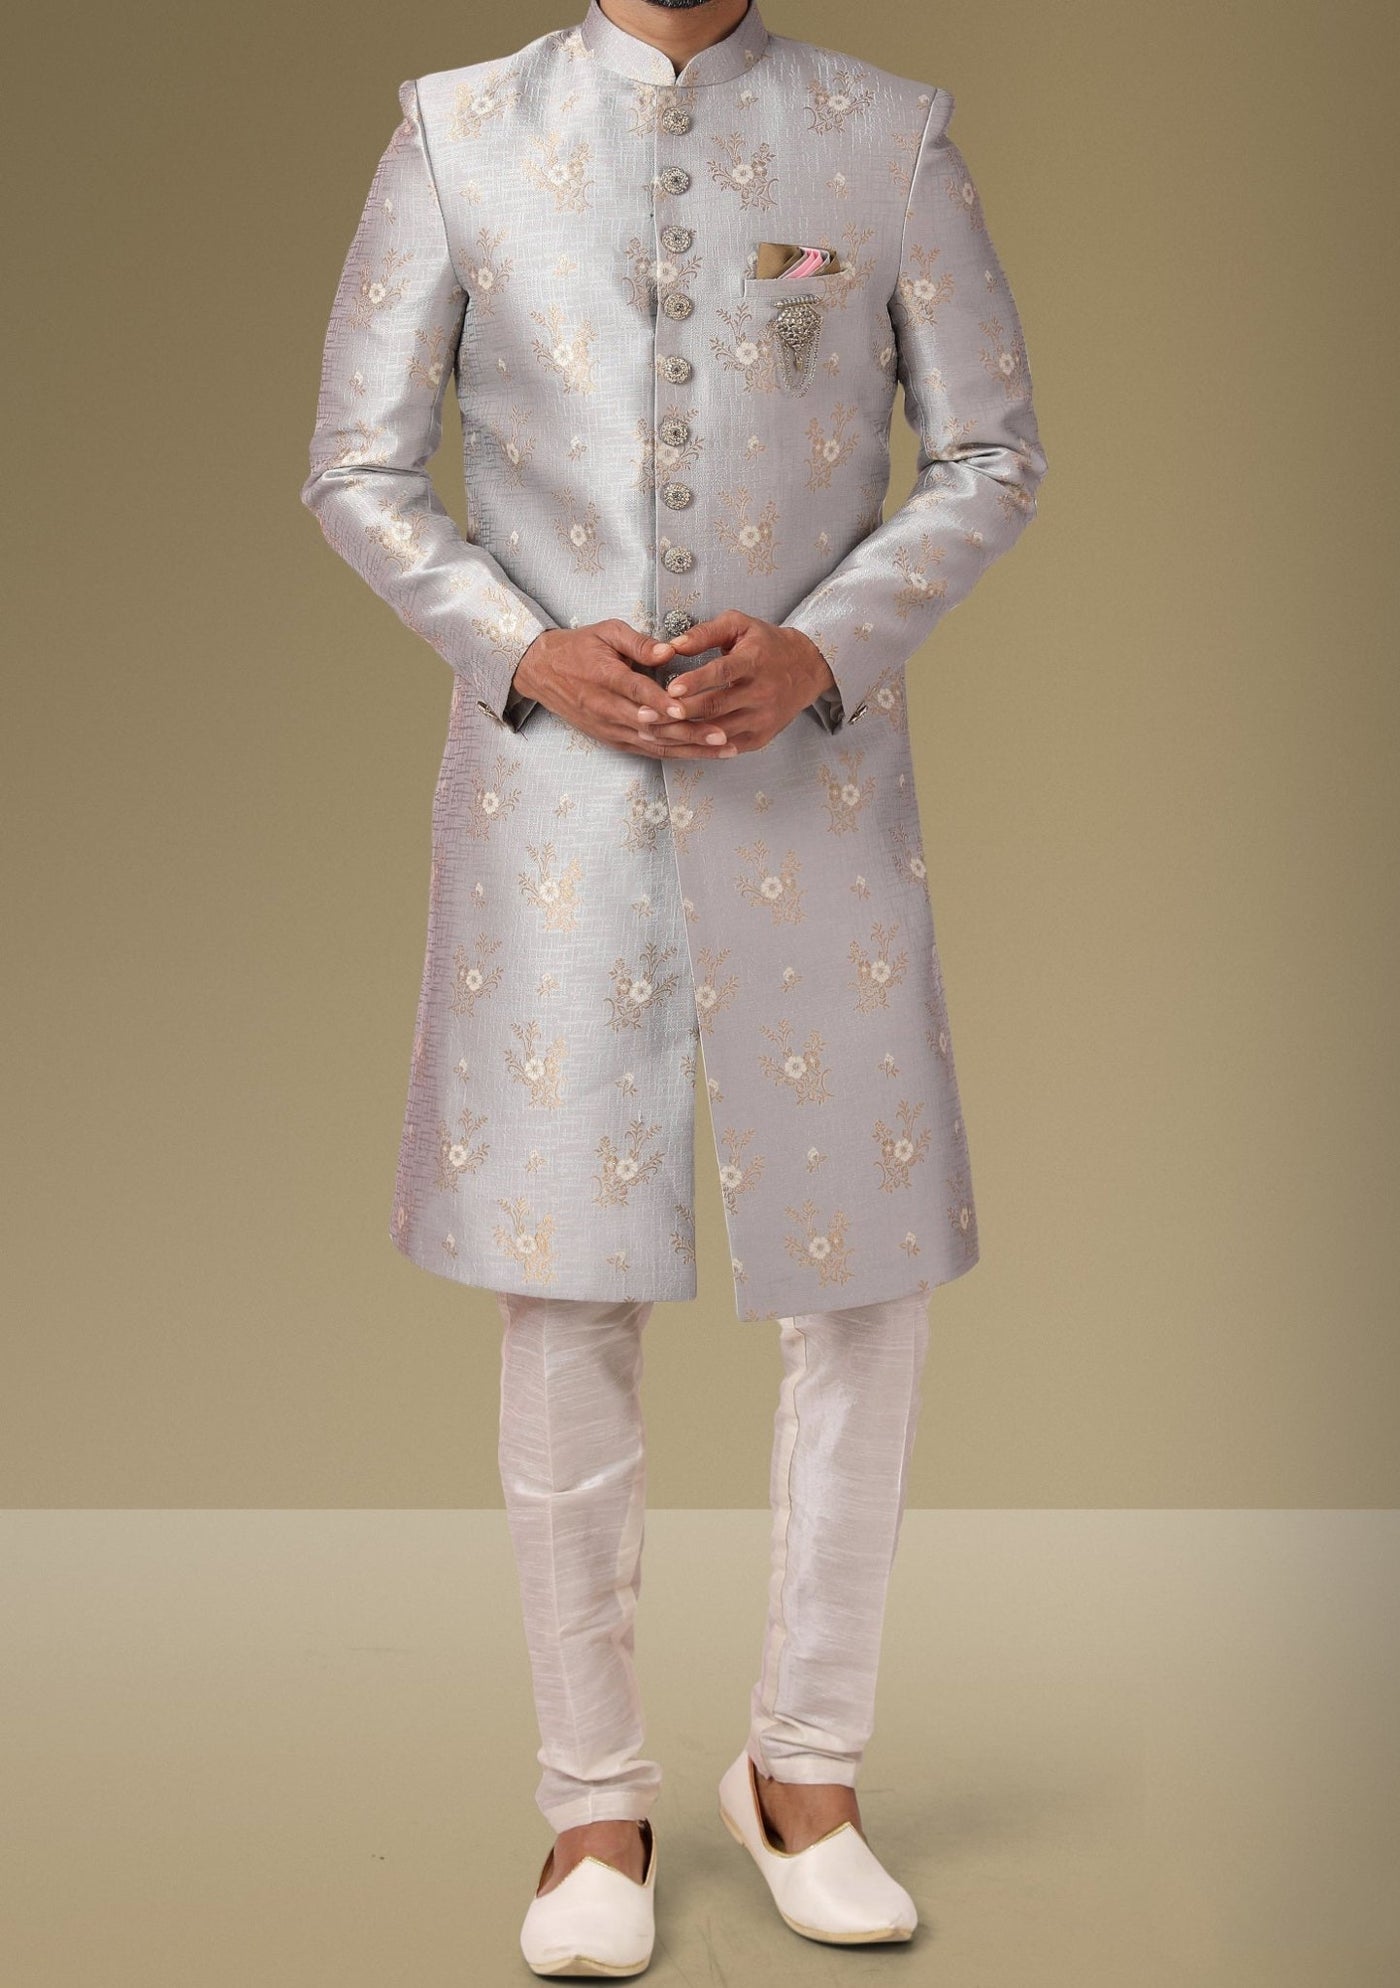 Men's Indo Western Party Wear Sherwani Suit - db18080